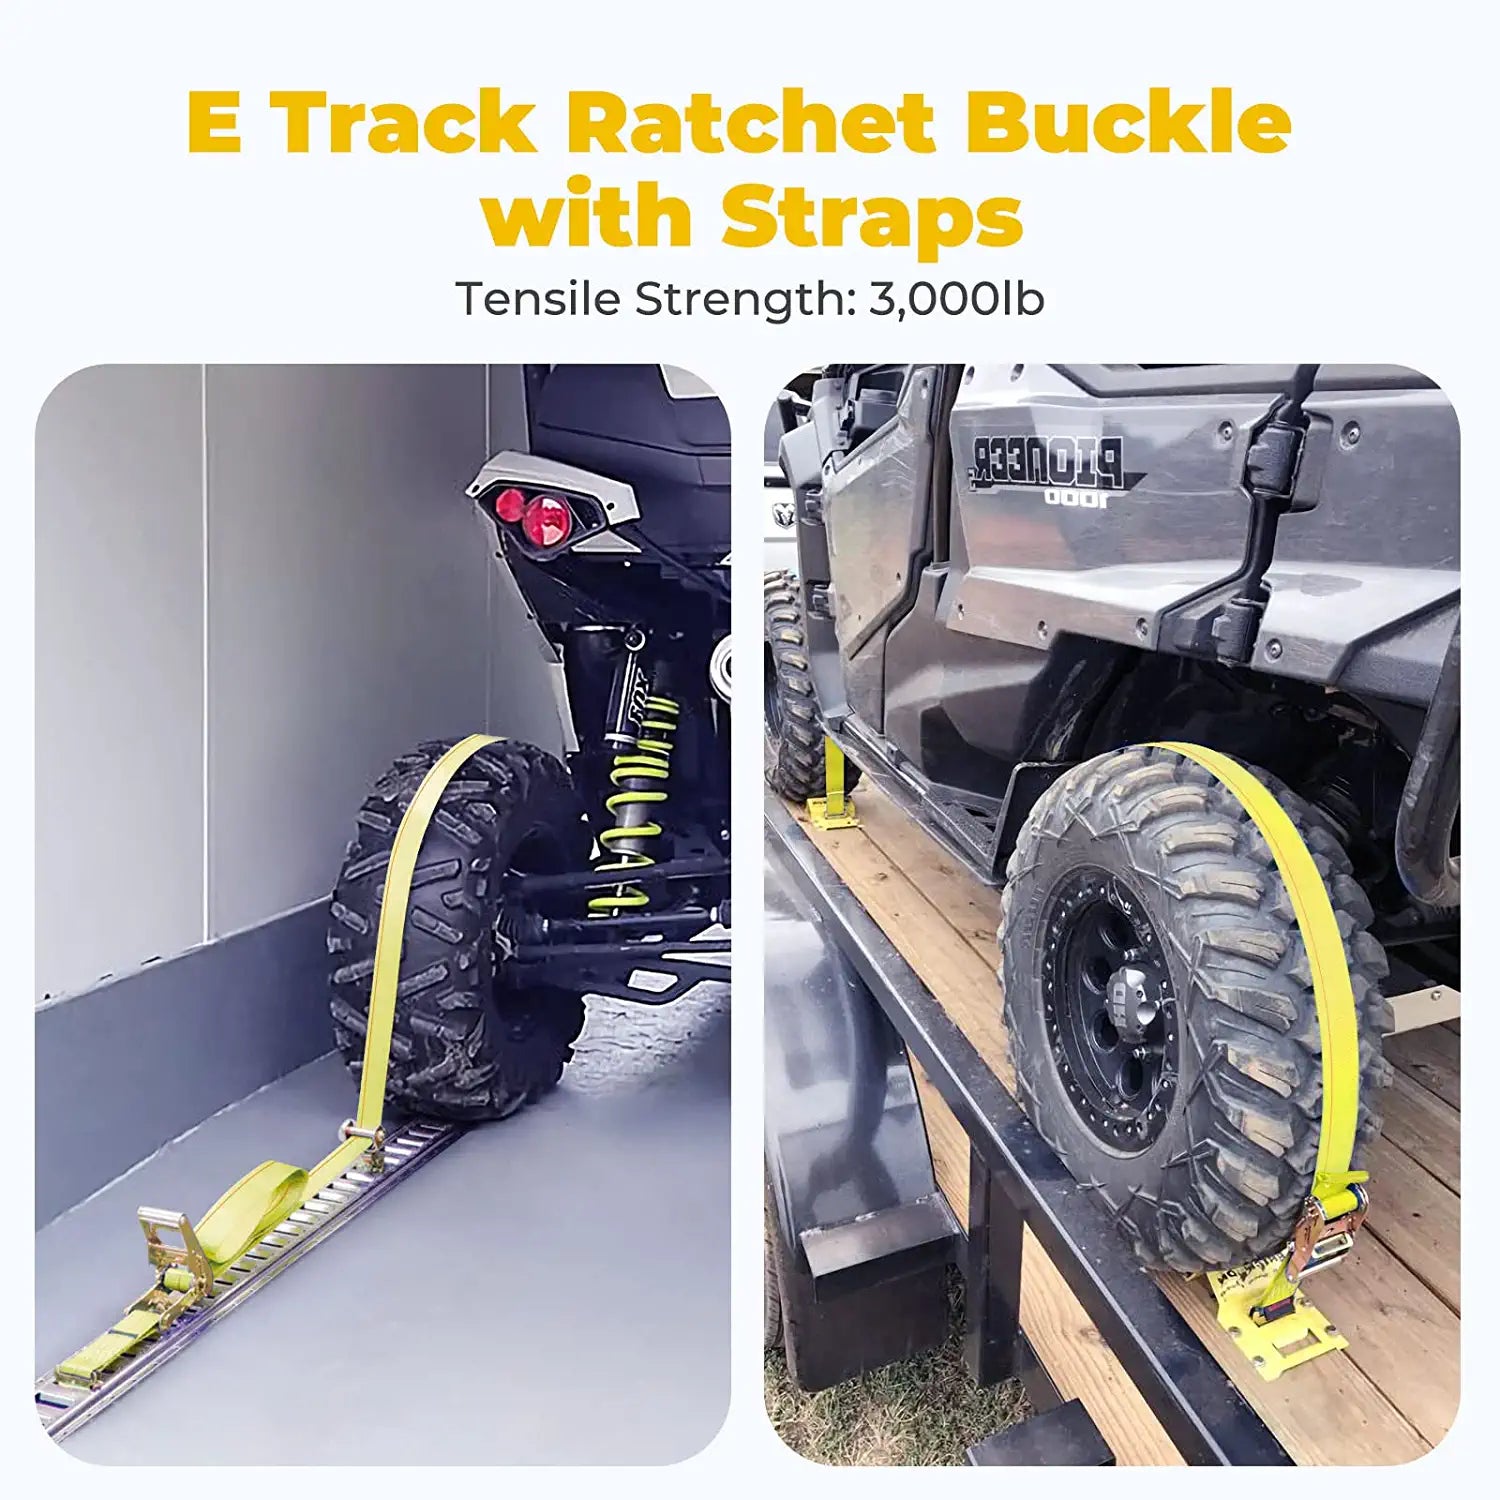 E Track Tie-Down Kit - 18 Pieces: 8 Pack E-Track Rails & 10 E Track Tie-Down Accessories